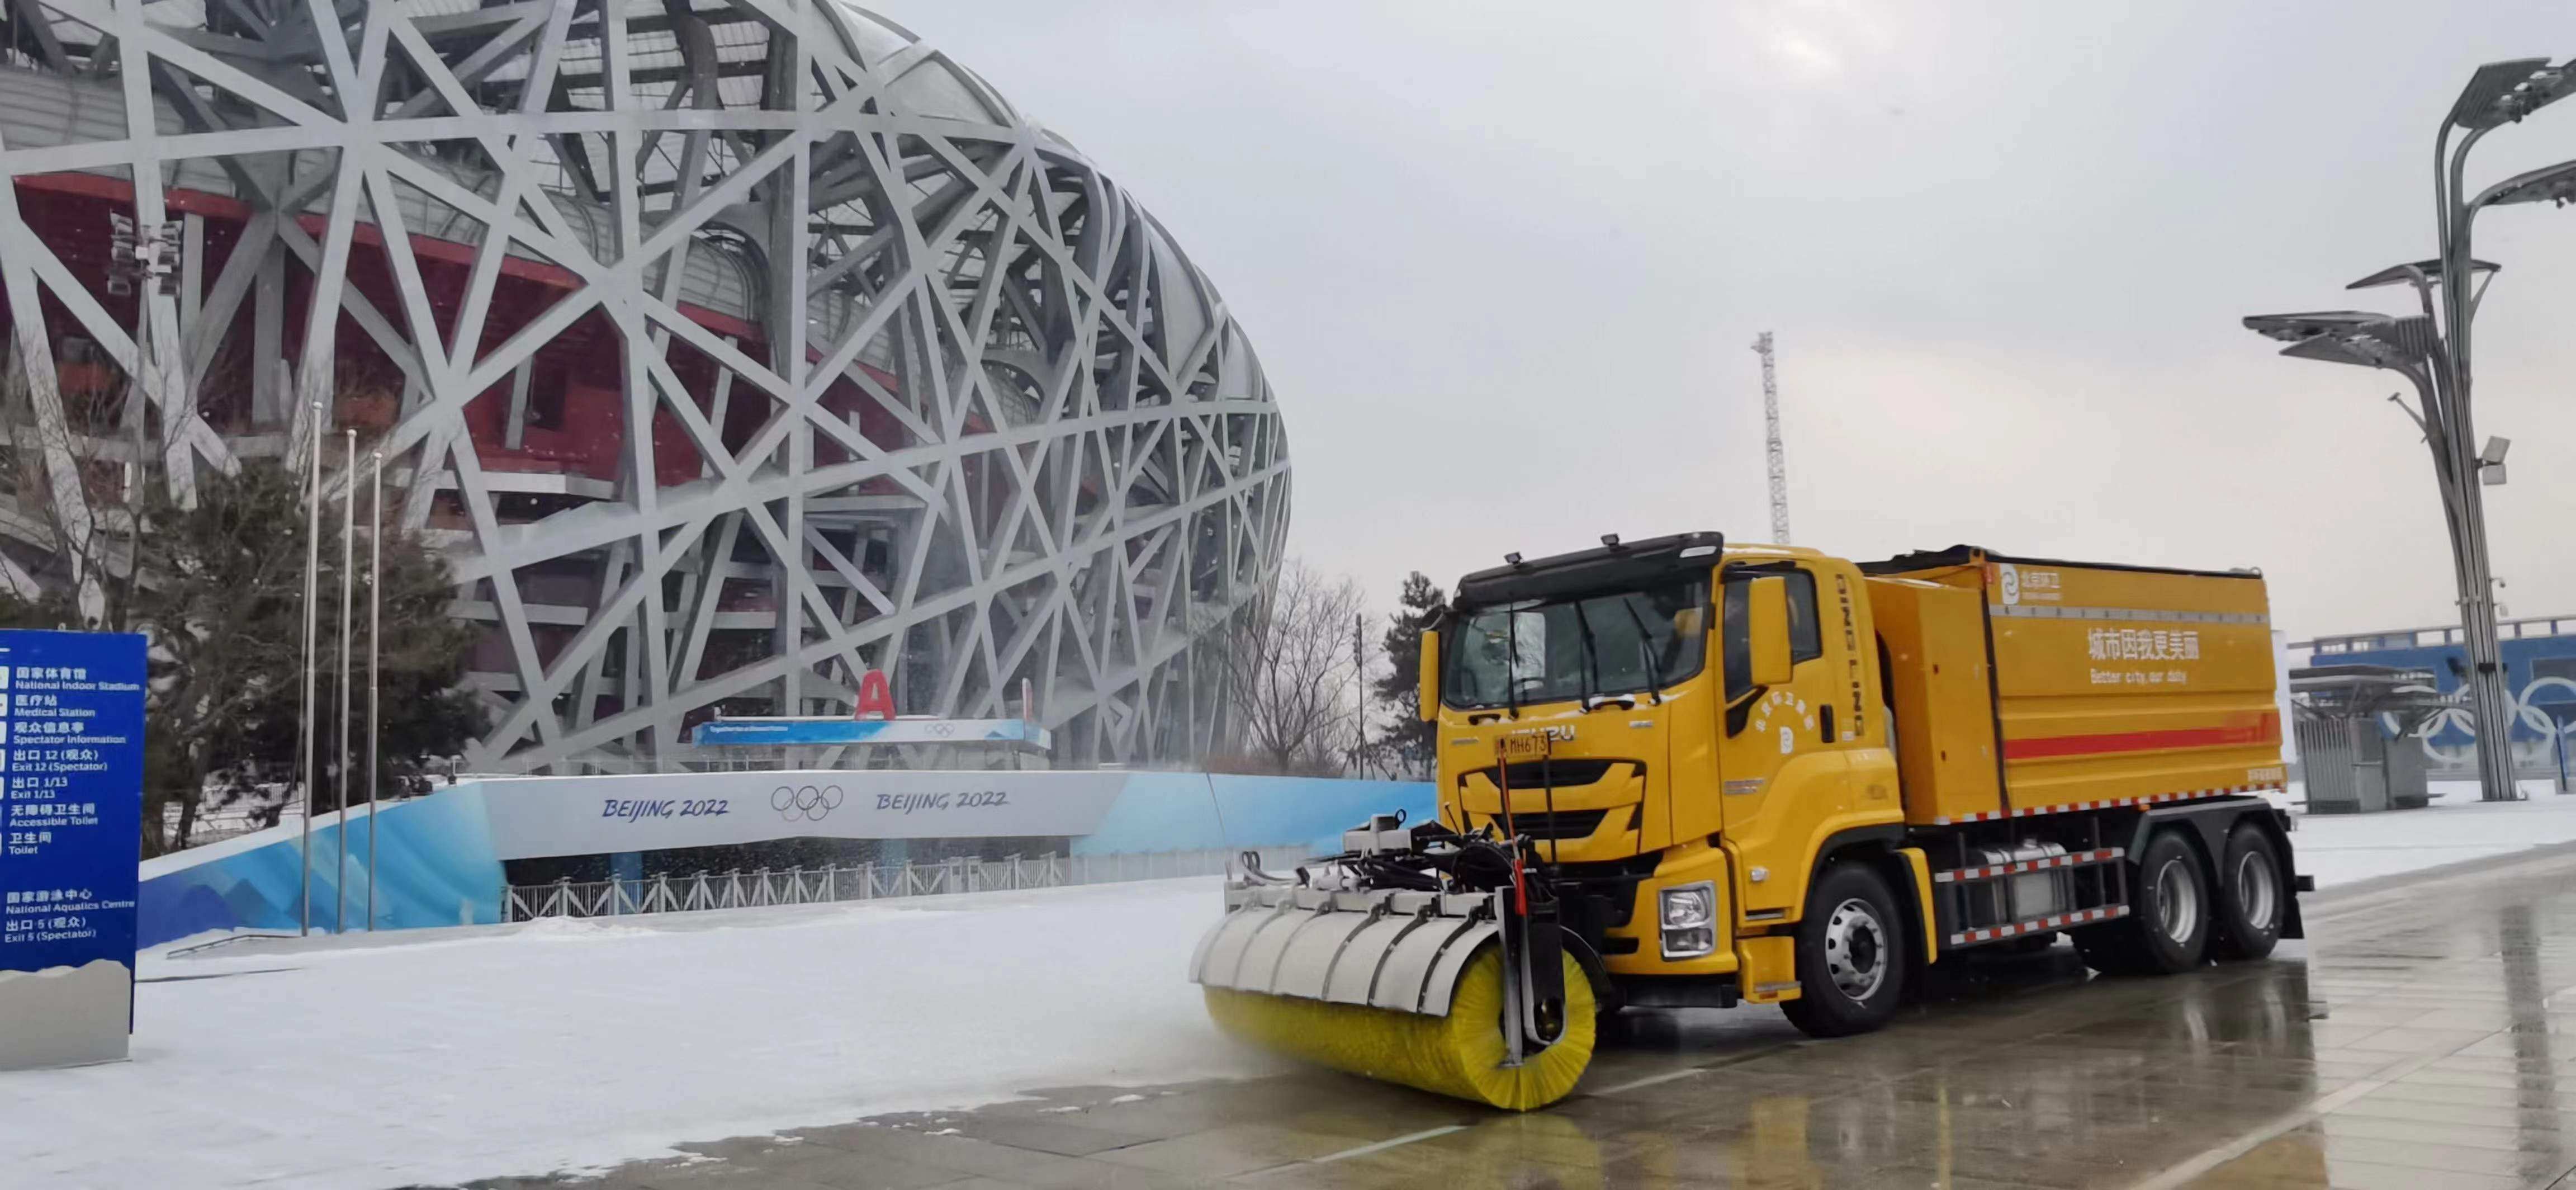 名称:多功能除雪车设备1北京地区记者了解到,北京环卫集团配备了全新